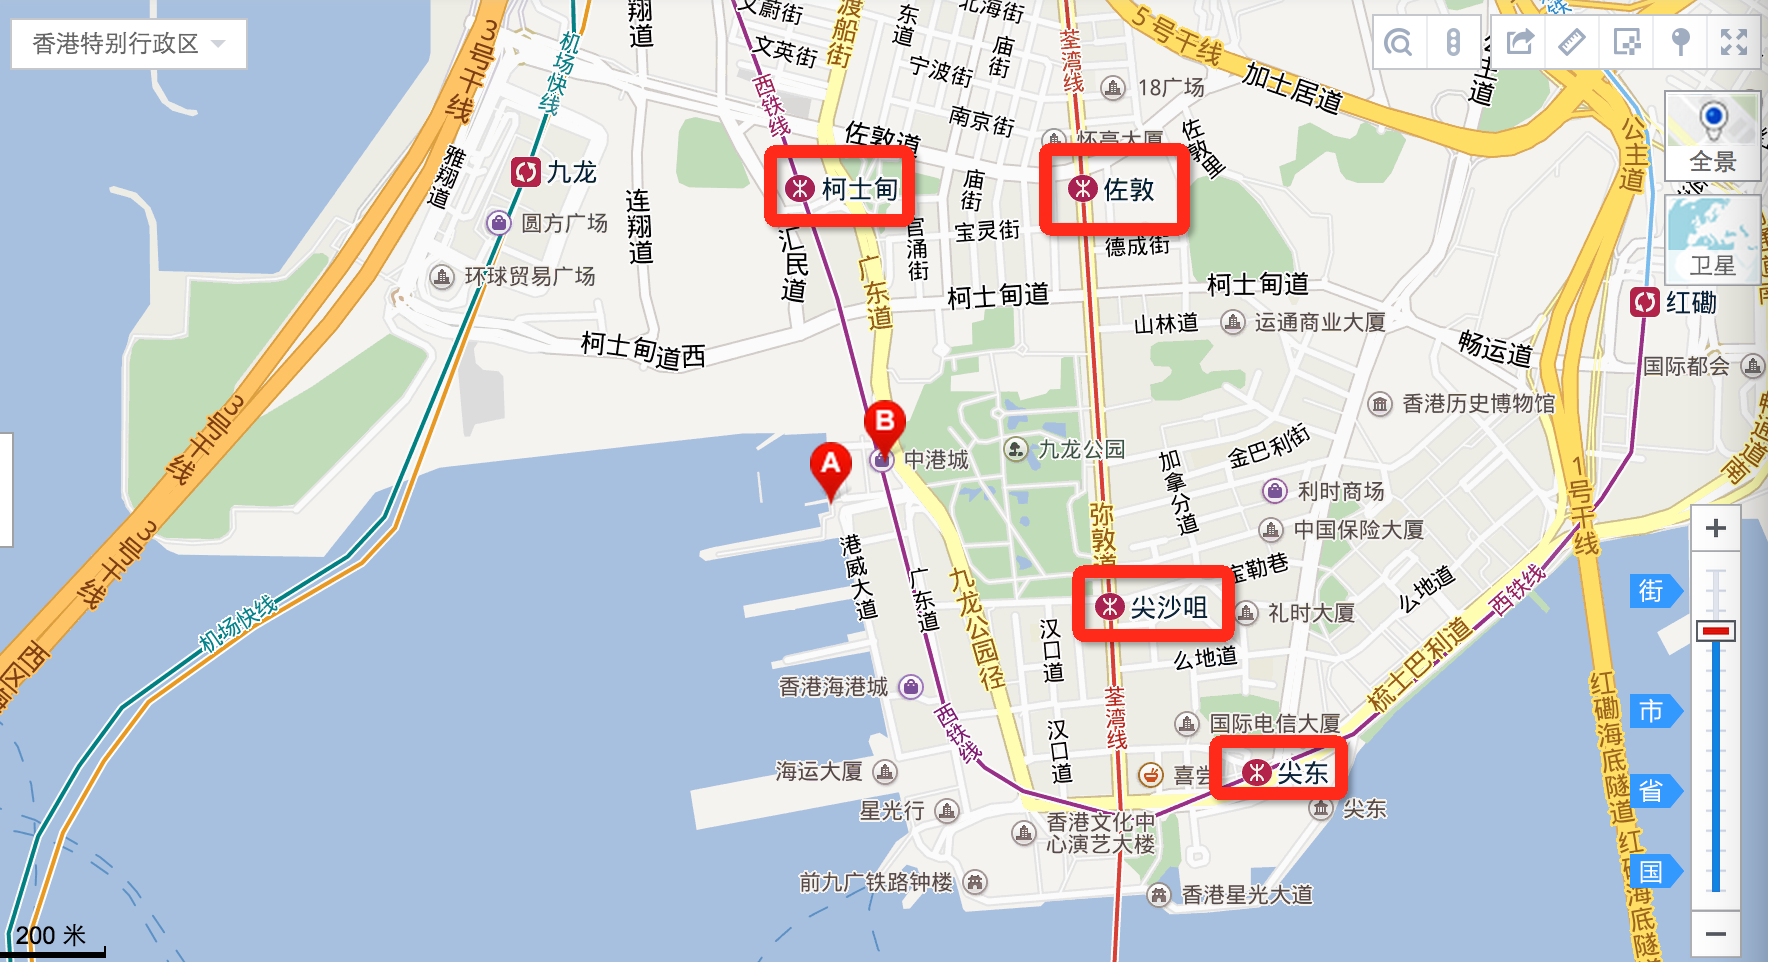 画廊 香港海运码头客运站扩建 / Foster + Partners - 5